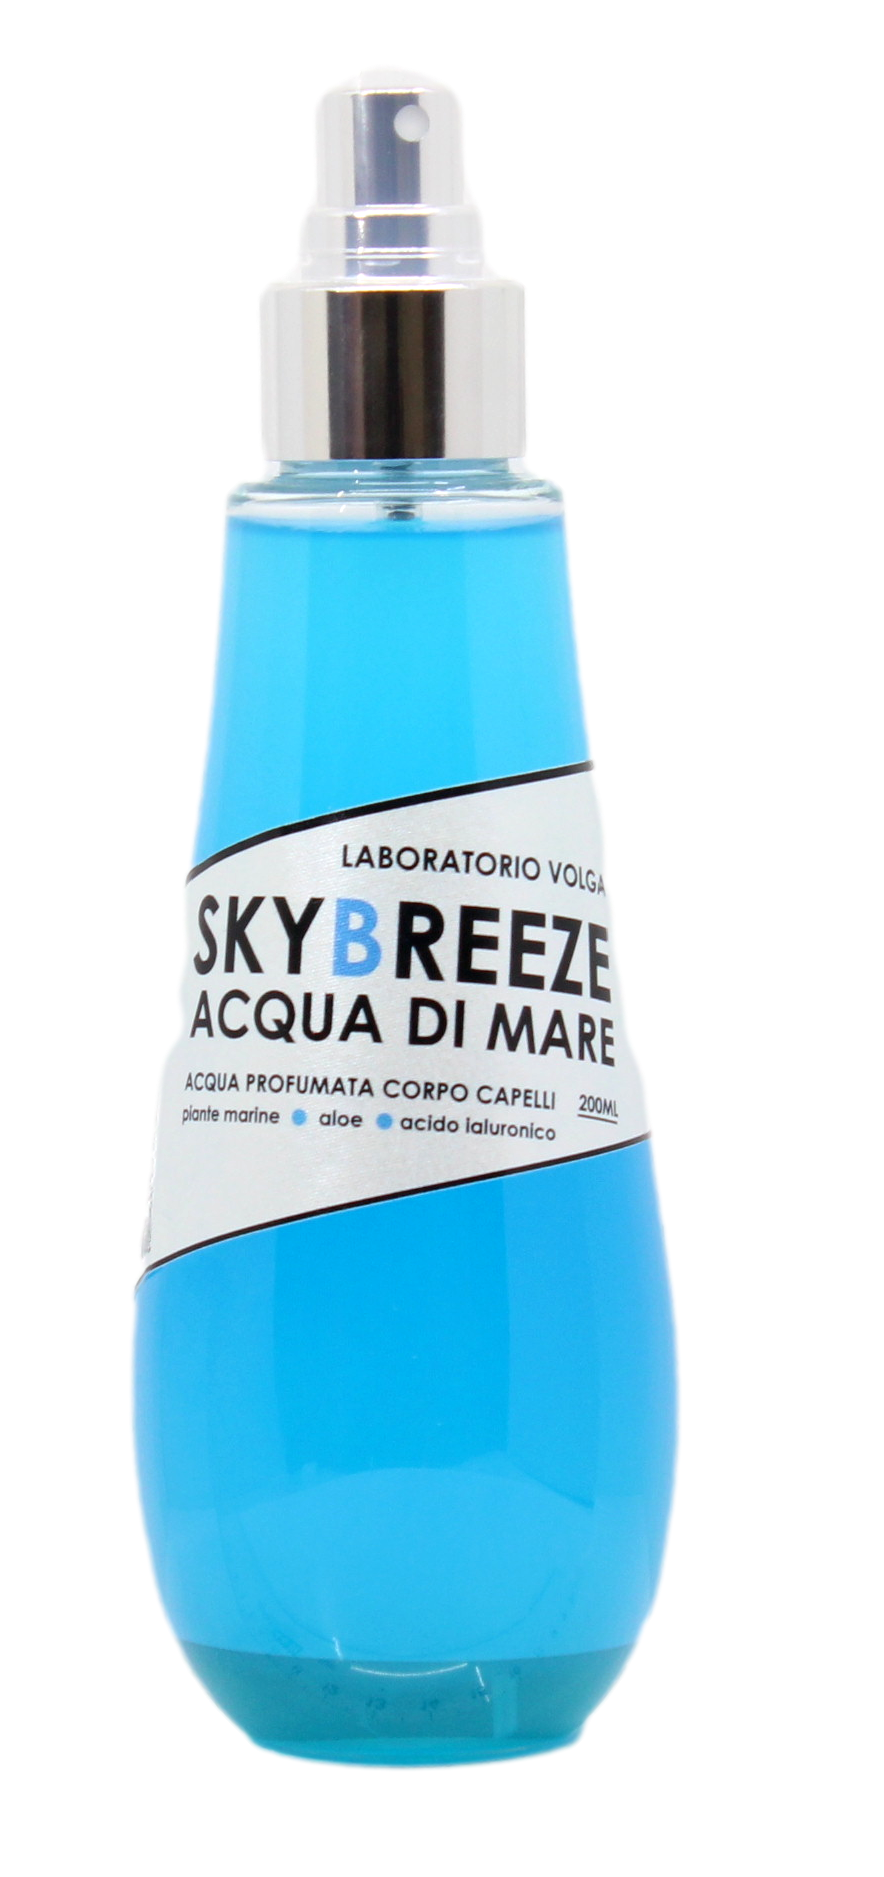 Erfrischungsspray Sky Breeze